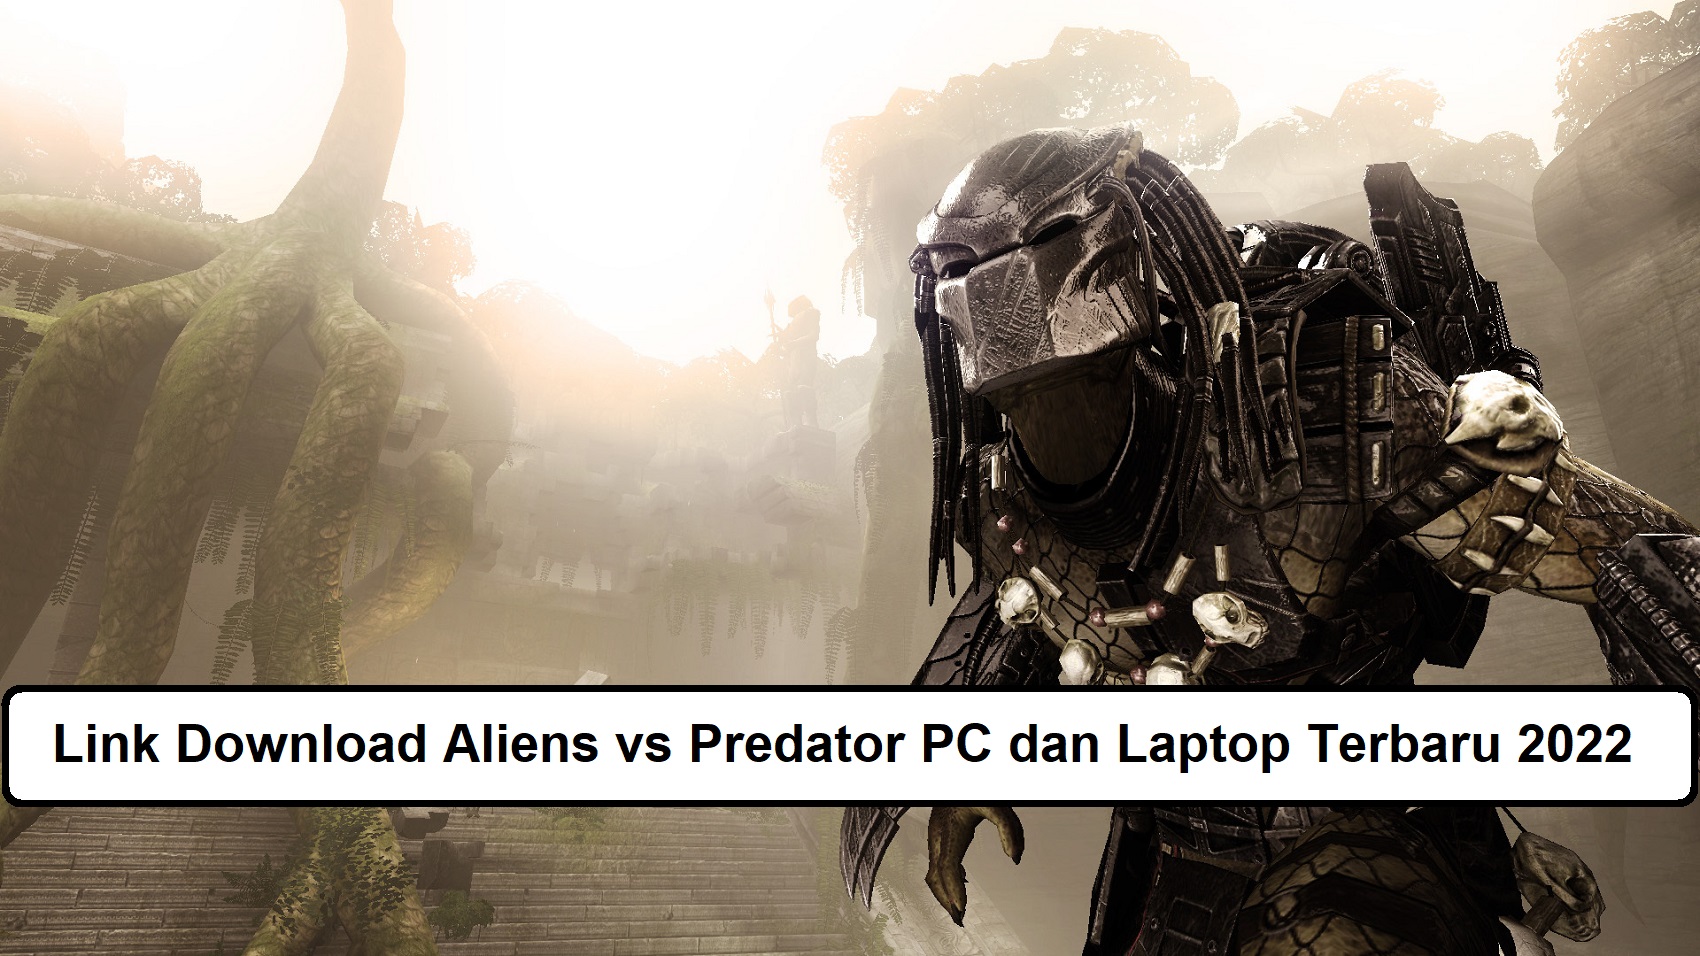 Link Download Aliens vs Predator PC dan Laptop Terbaru 2022